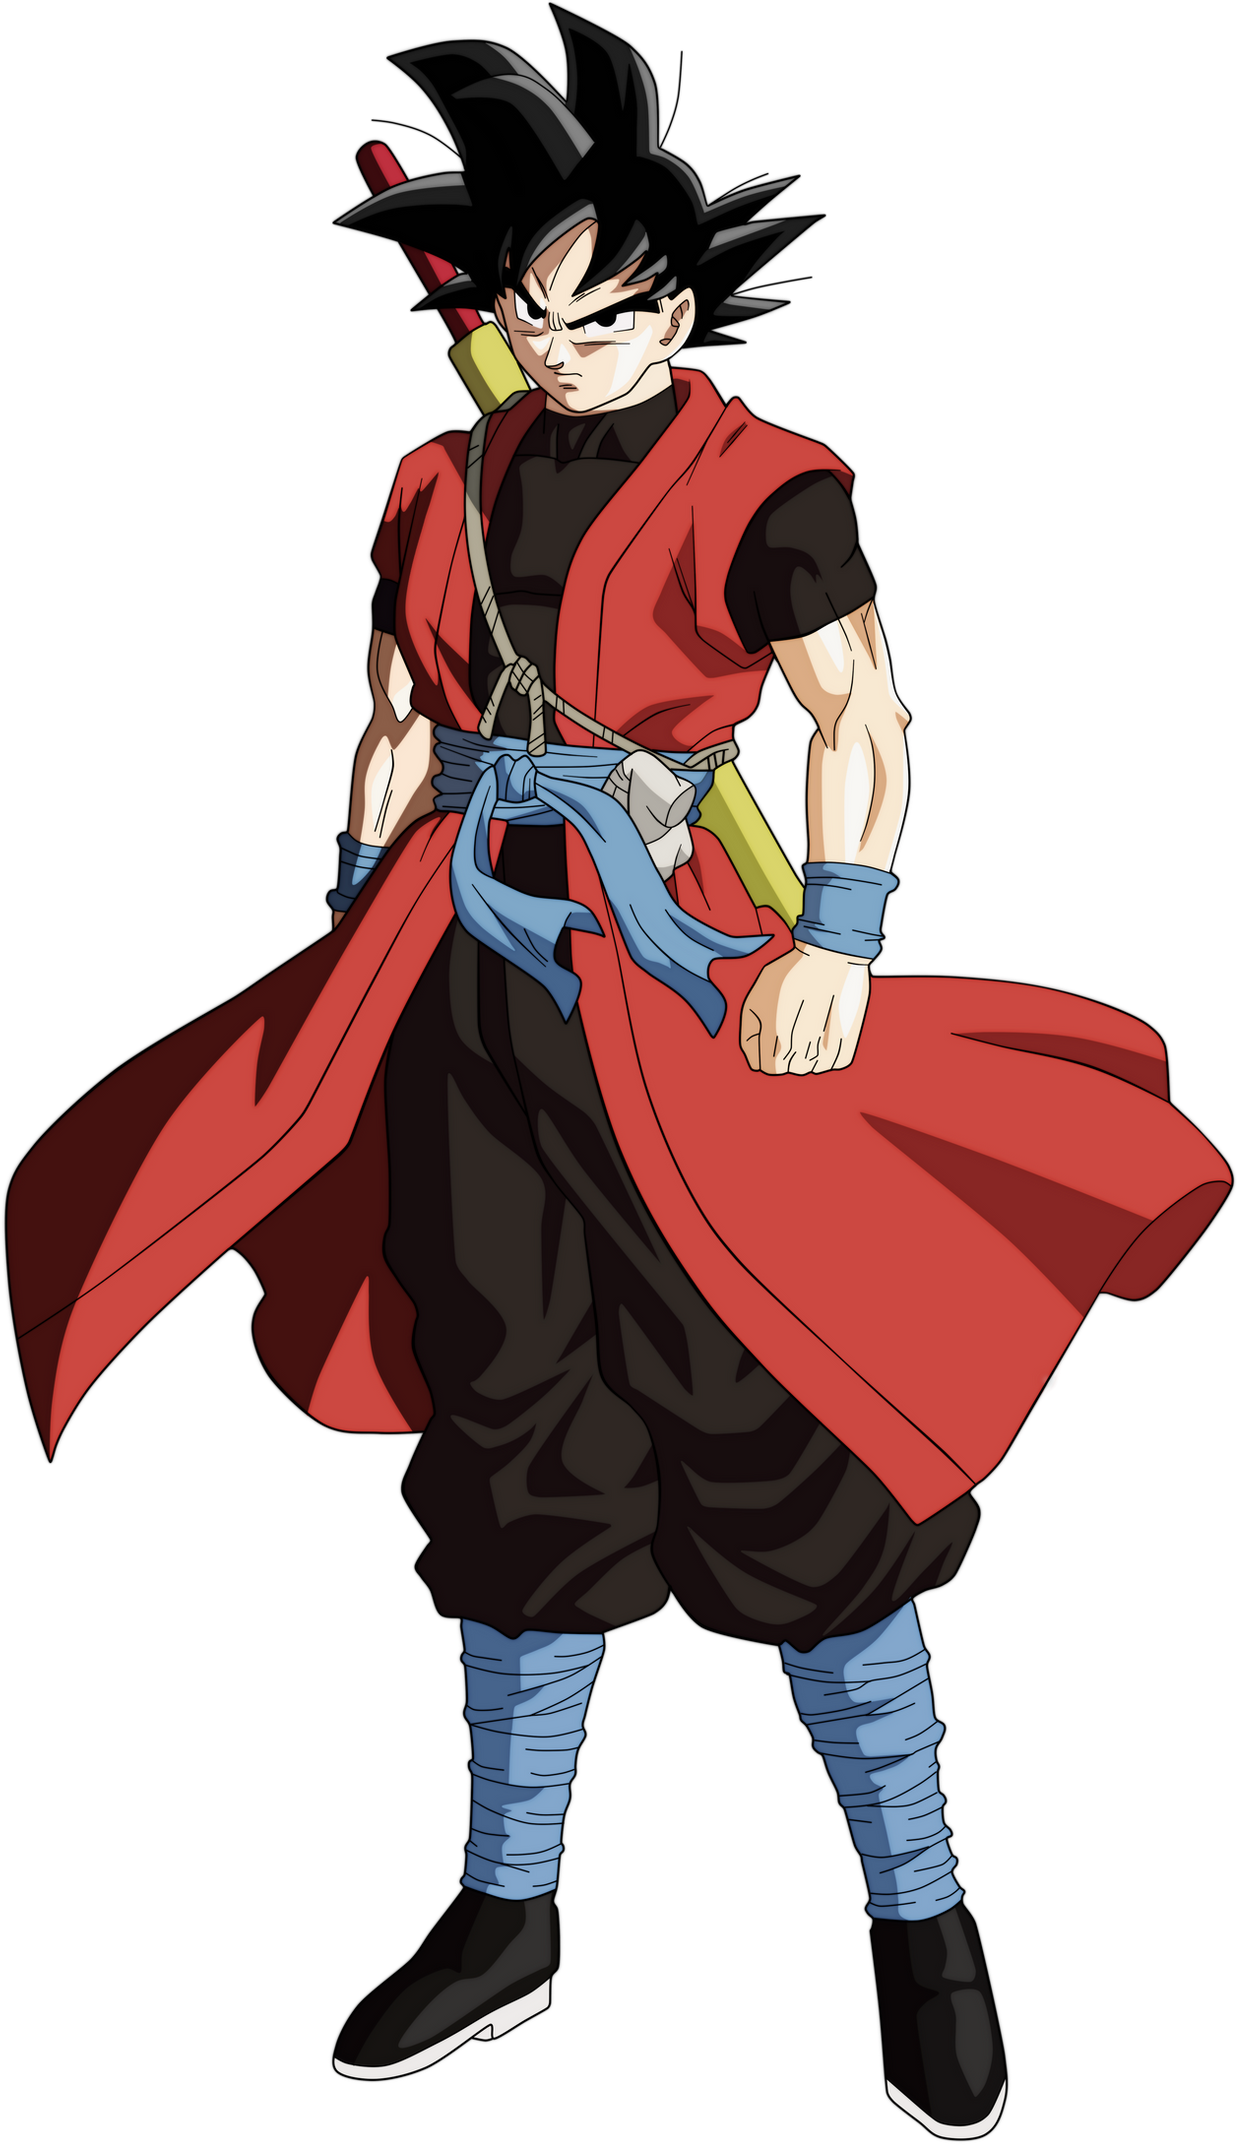 Who would win, Super Saiyan 4 Xeno Goku vs CC Goku Super Saiyan